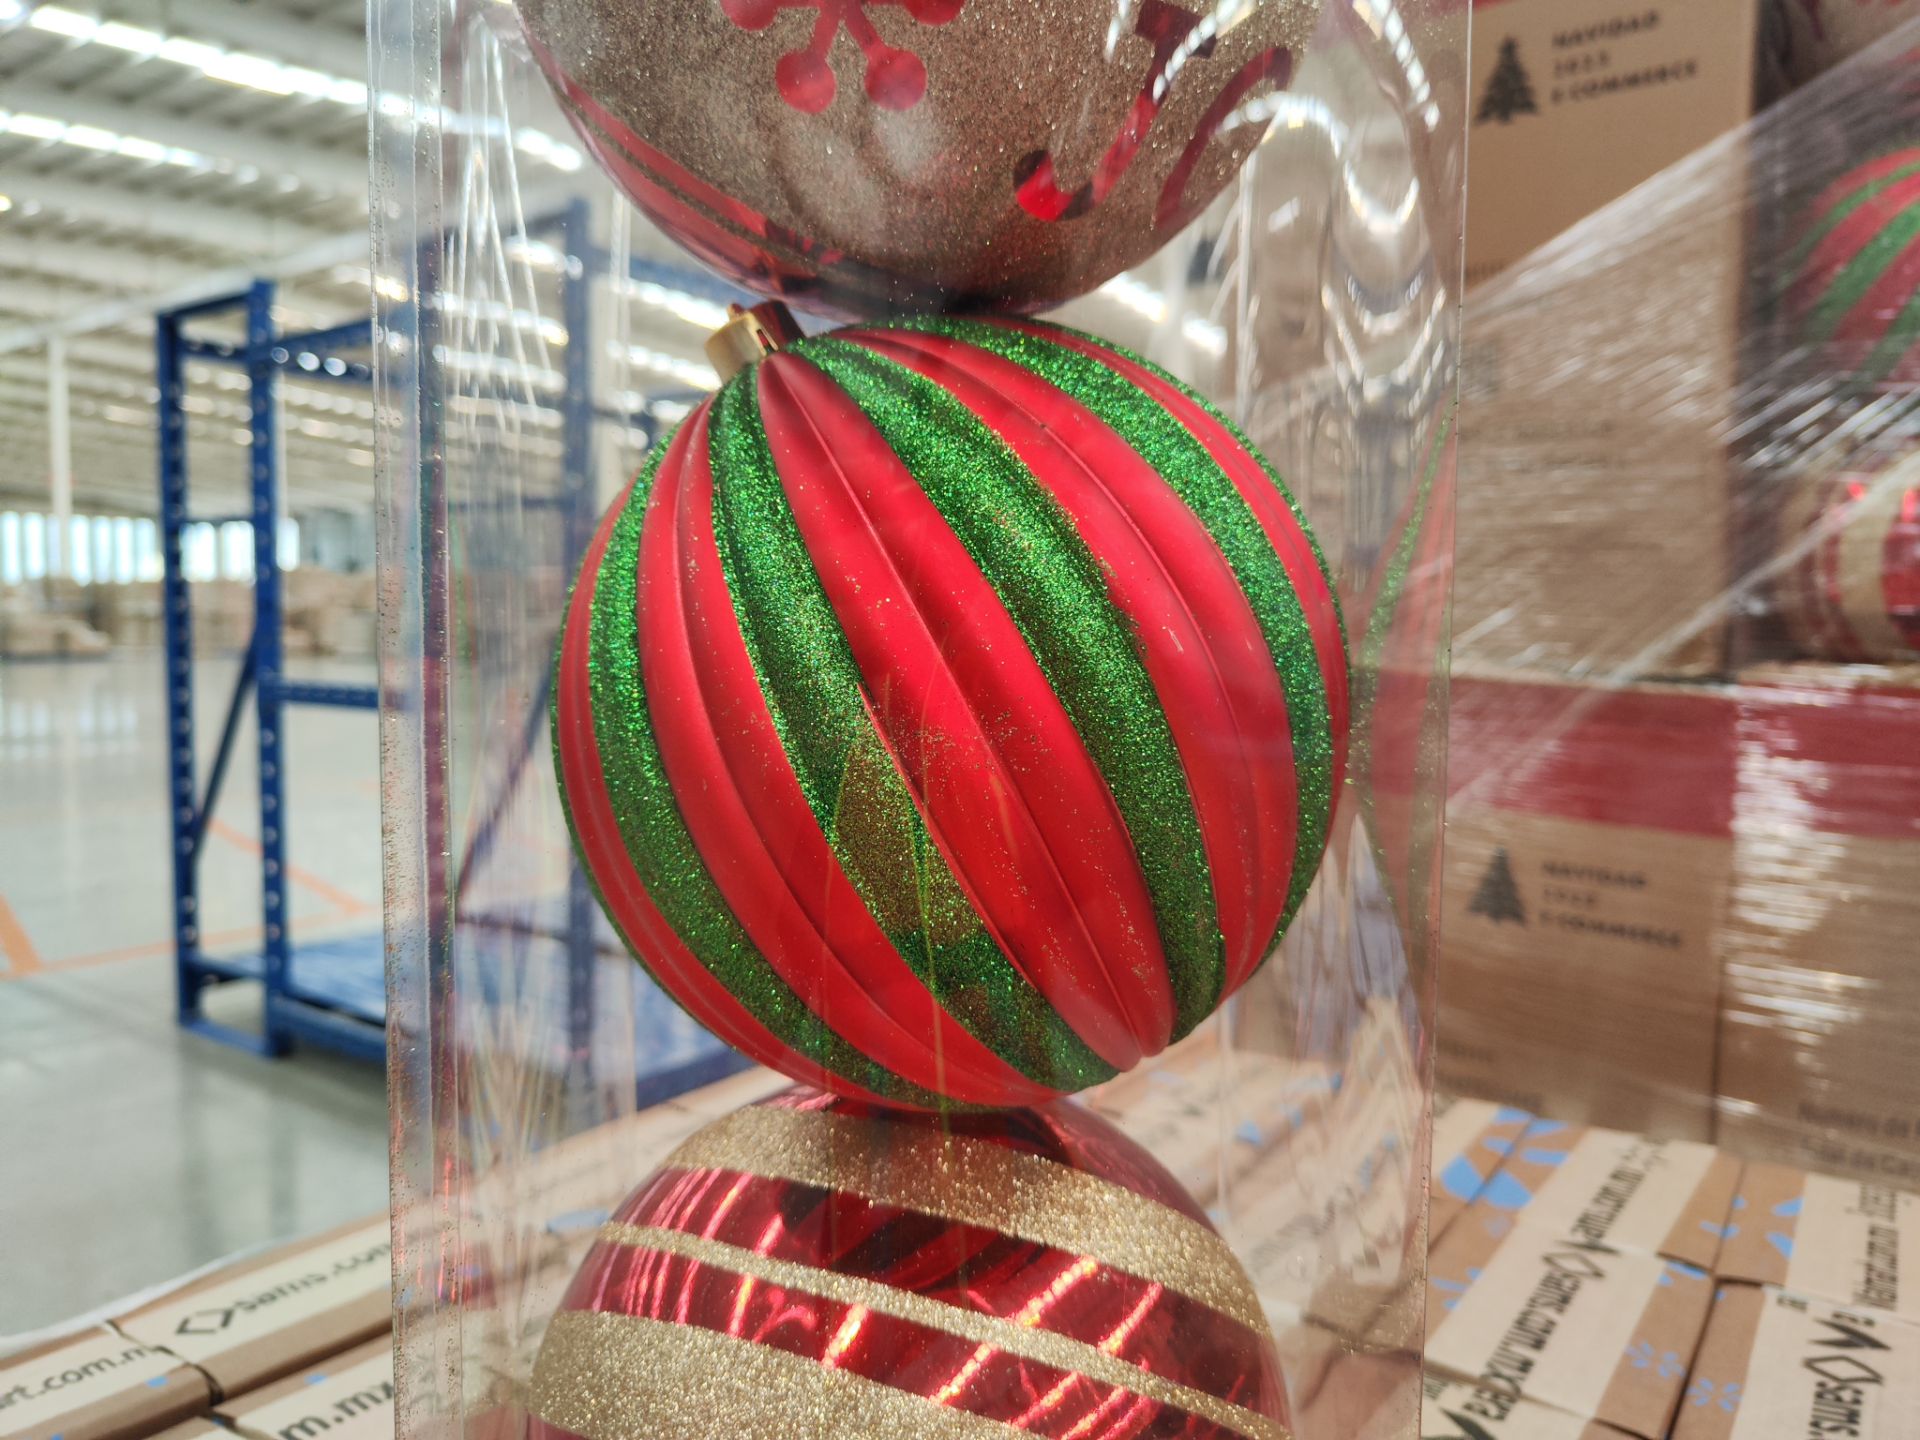 (Nuevo) Lote conformado por 25 Cajas con set de 3 esferas decorativas color rojo, marca Holiday Tim - Image 4 of 6